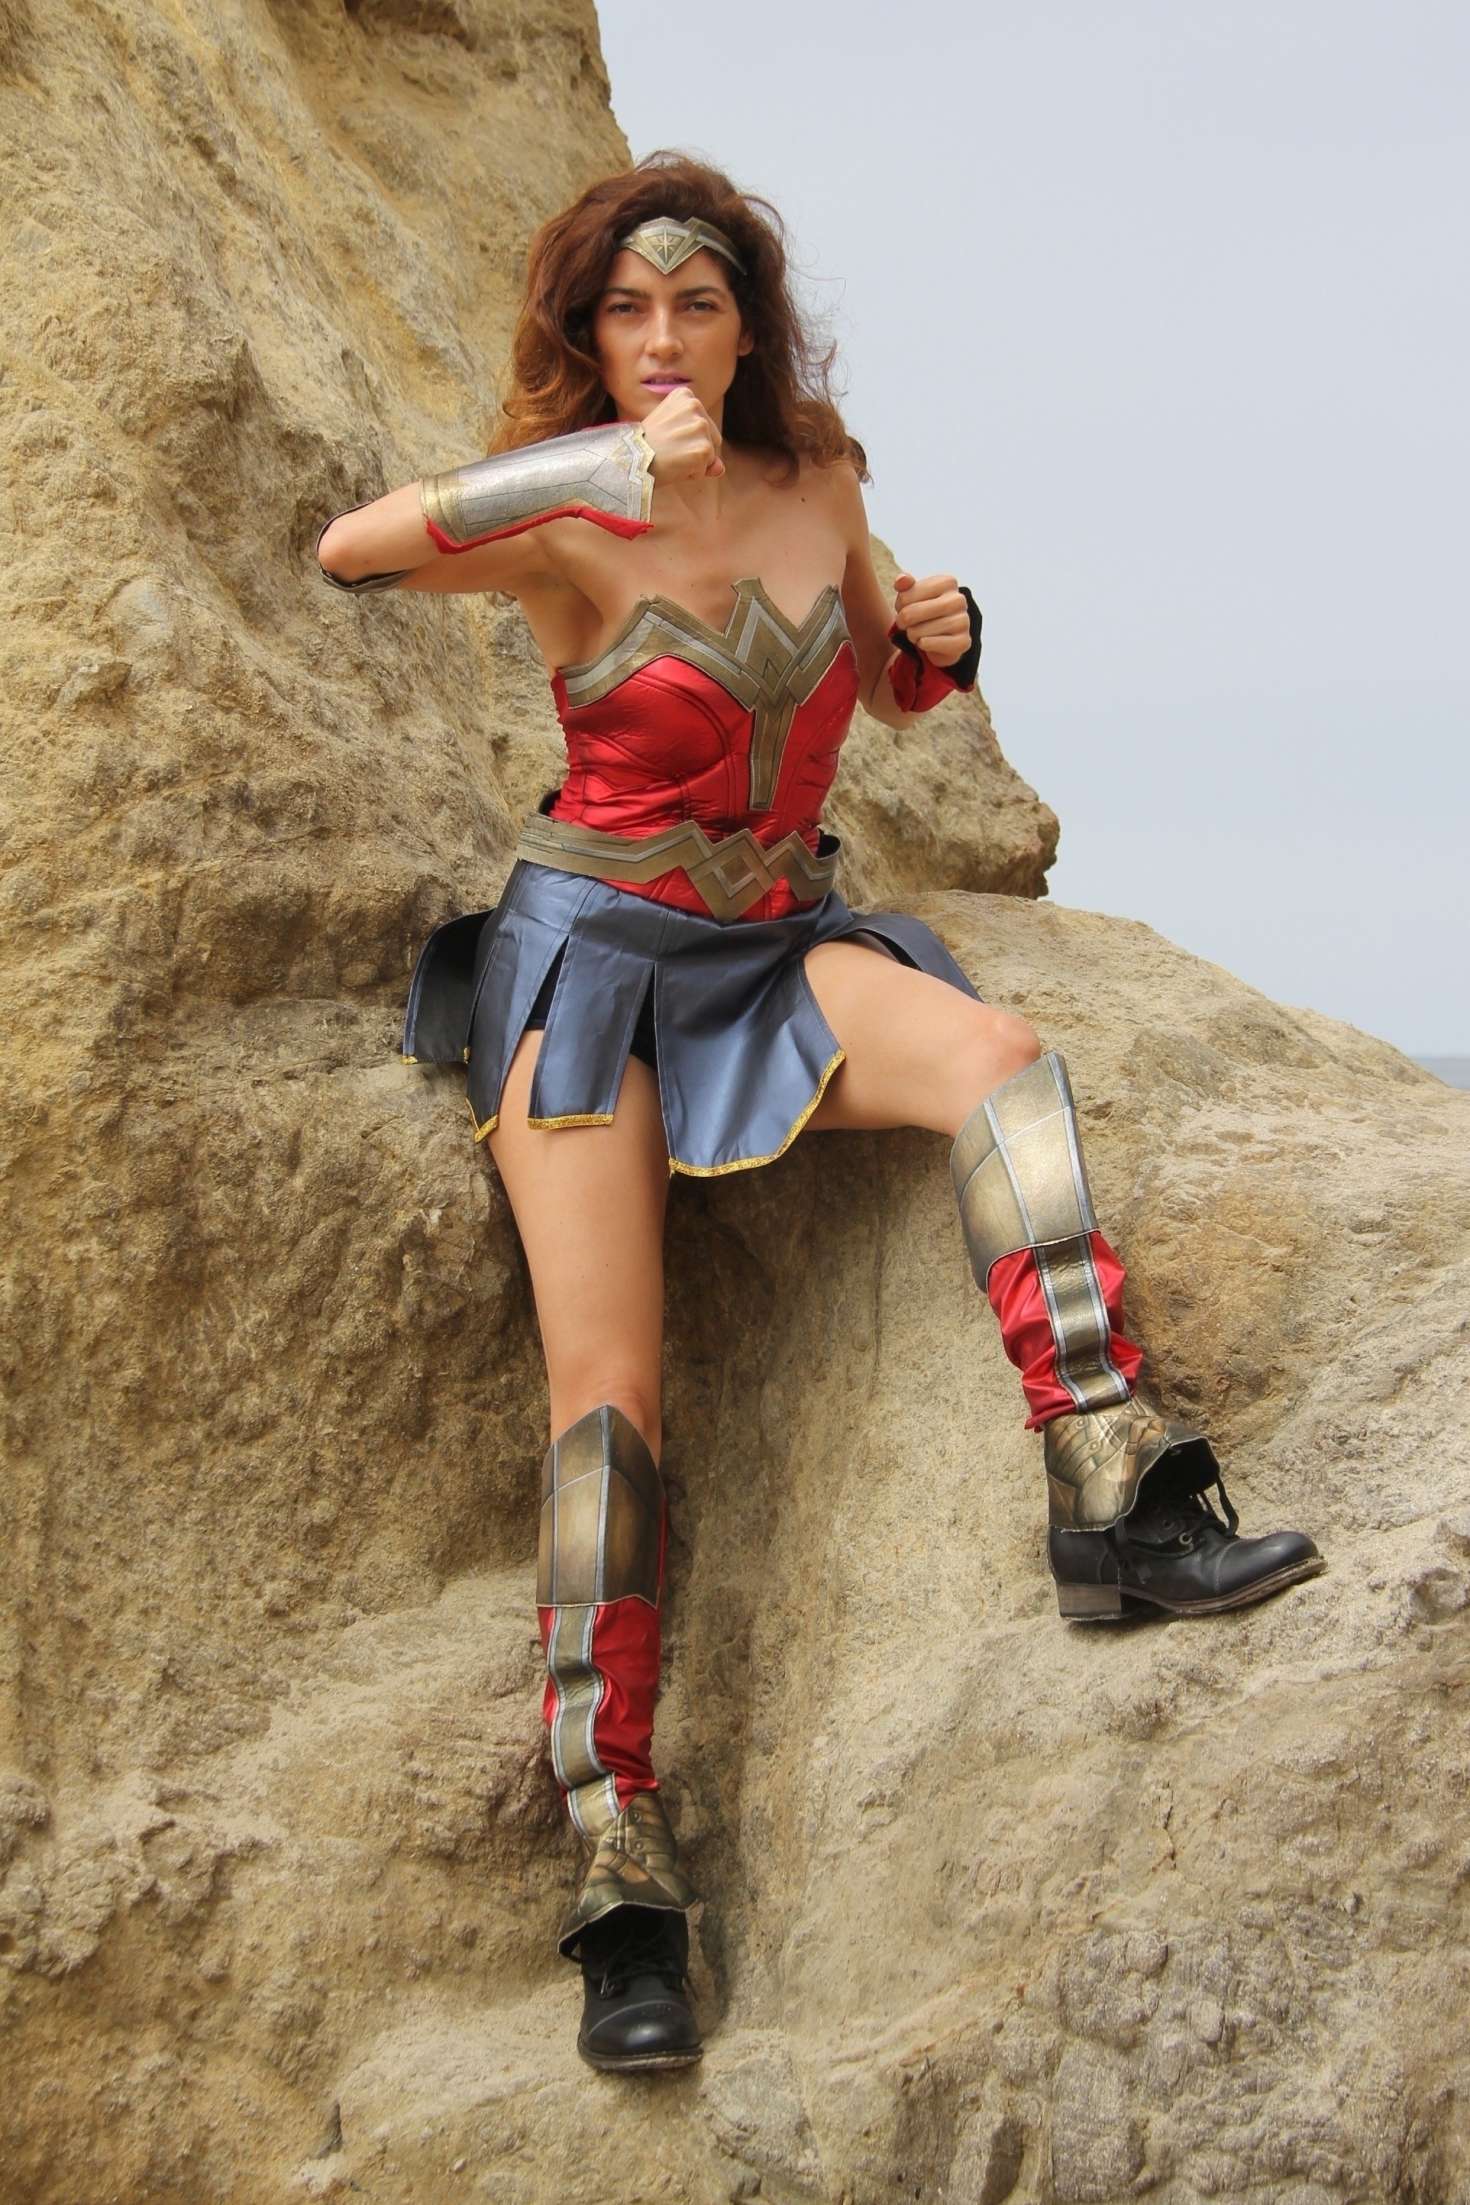 Blanca Blanco as a Wonder Woman on the beach in Malibu